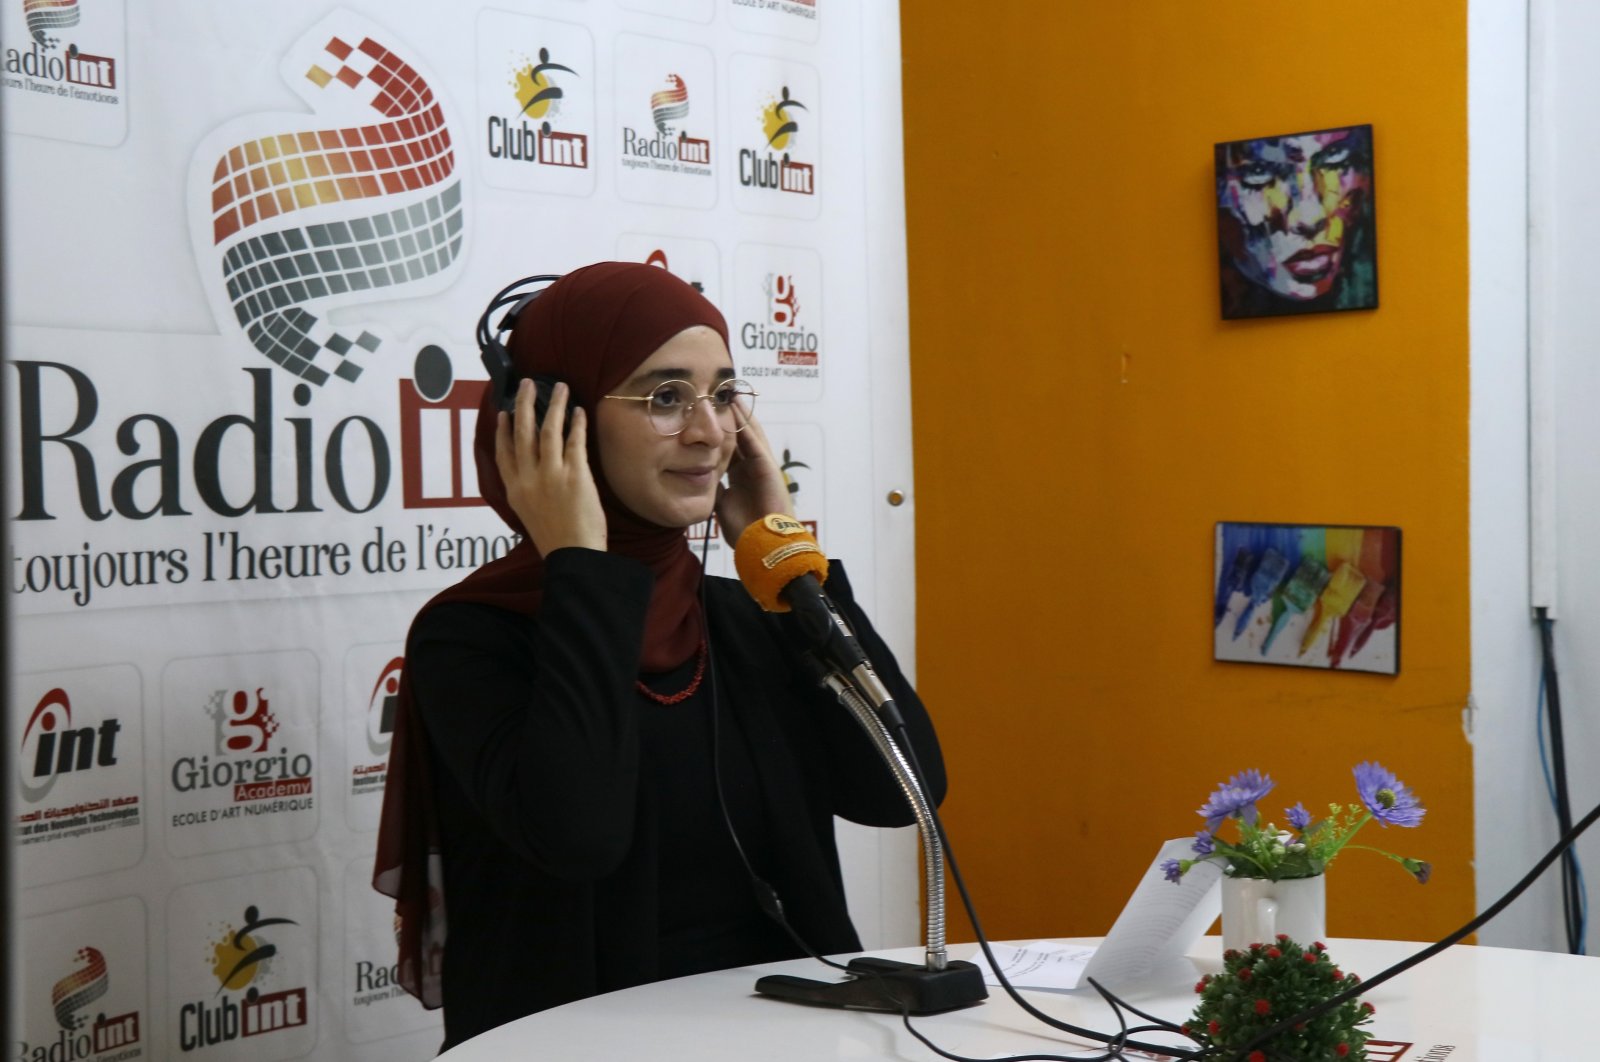 Wanita Tunisia membawakan acara radio pertama di negaranya dalam bahasa Turki